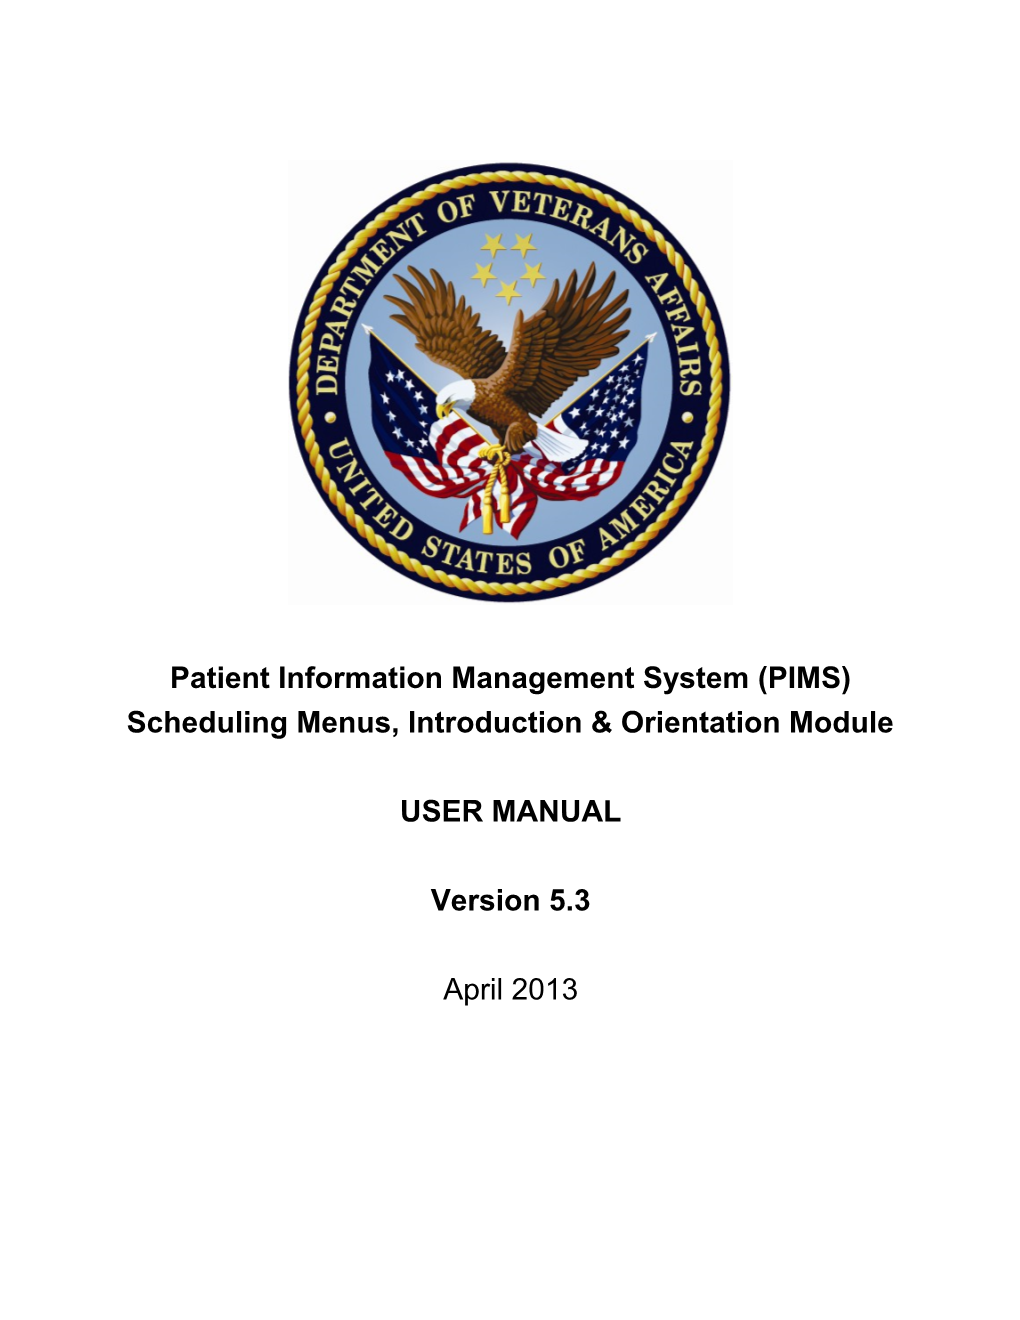 Patient Information Management System (PIMS) s1